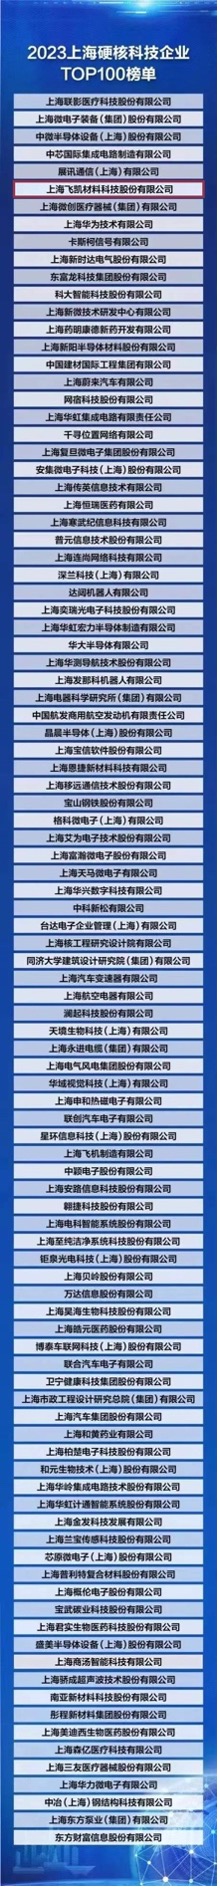 飞凯材料荣登“2023上海硬核科技企业TOP100榜单” ，研发创新赋能产业发展新格局